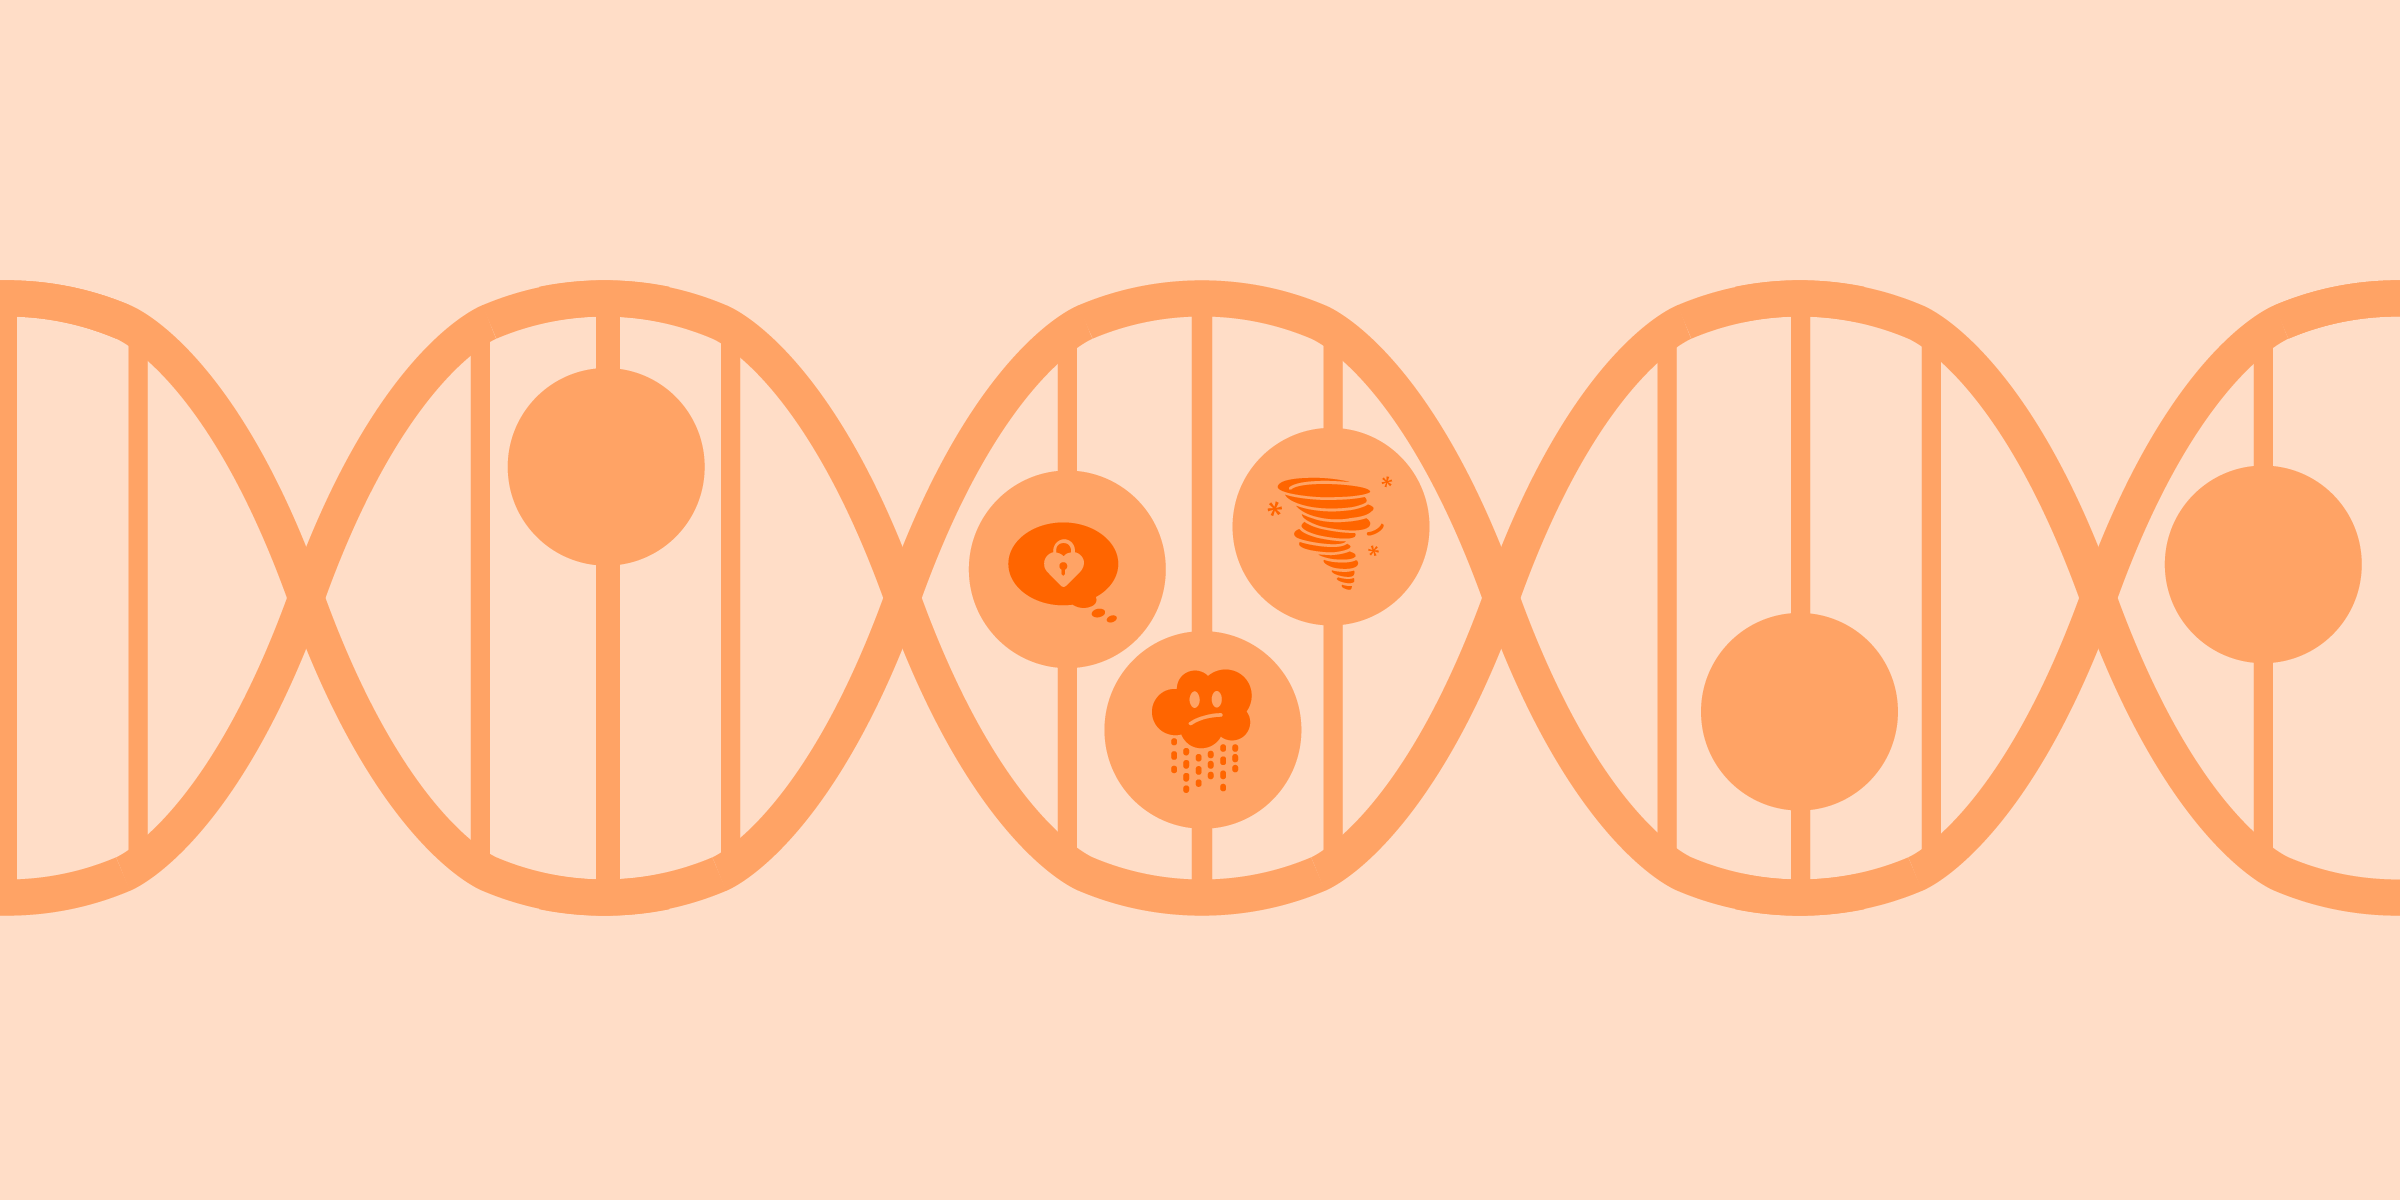 Zoom sobre el ADN, con algunos de los iconos de estado de ánimo de Clue dentro de las células. Ilustración en tonos naranjas.